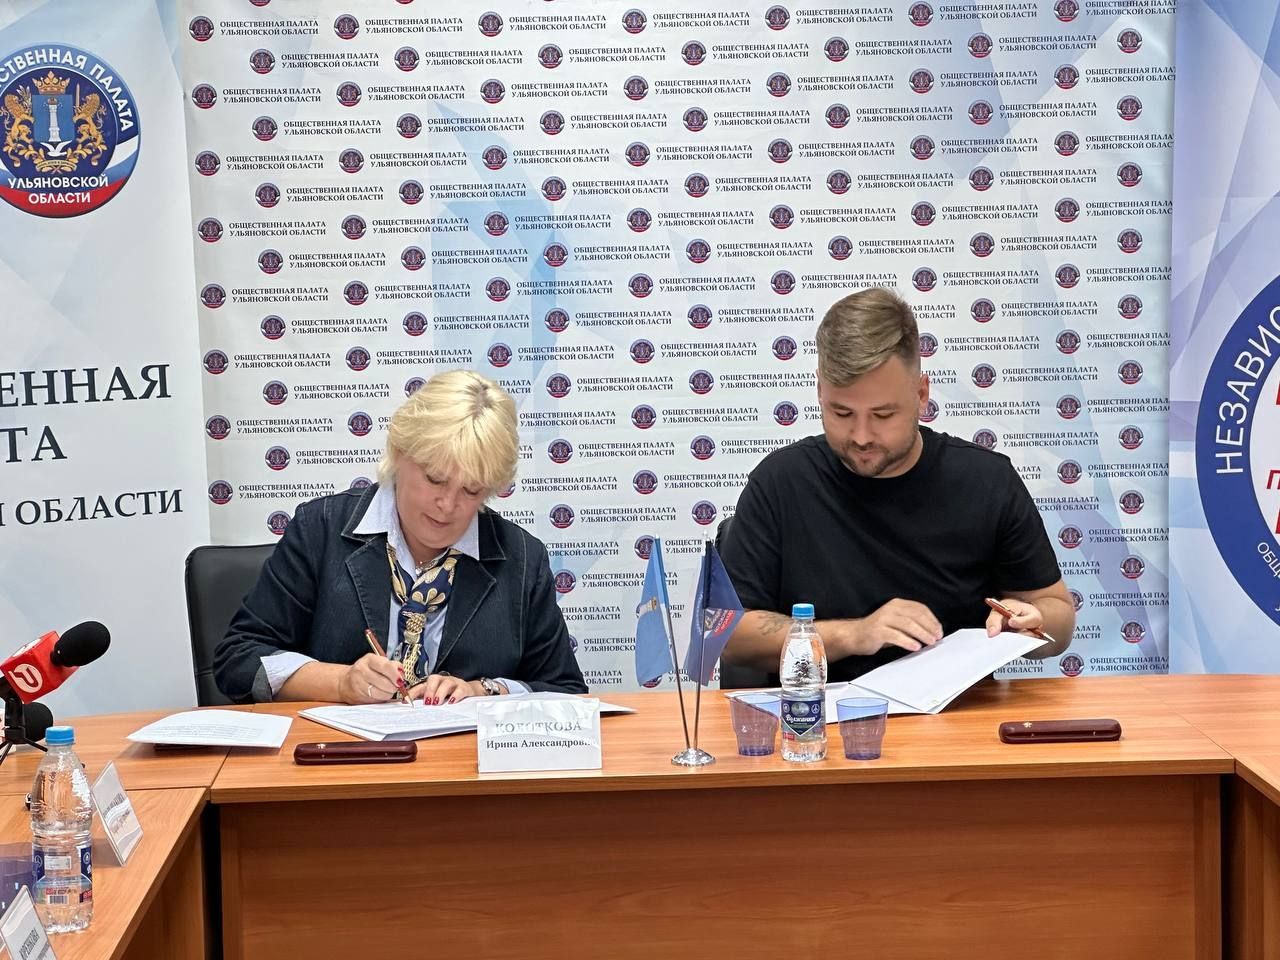 Ульяновские юристы и Общественная палата подписали соглашение о сотрудничестве